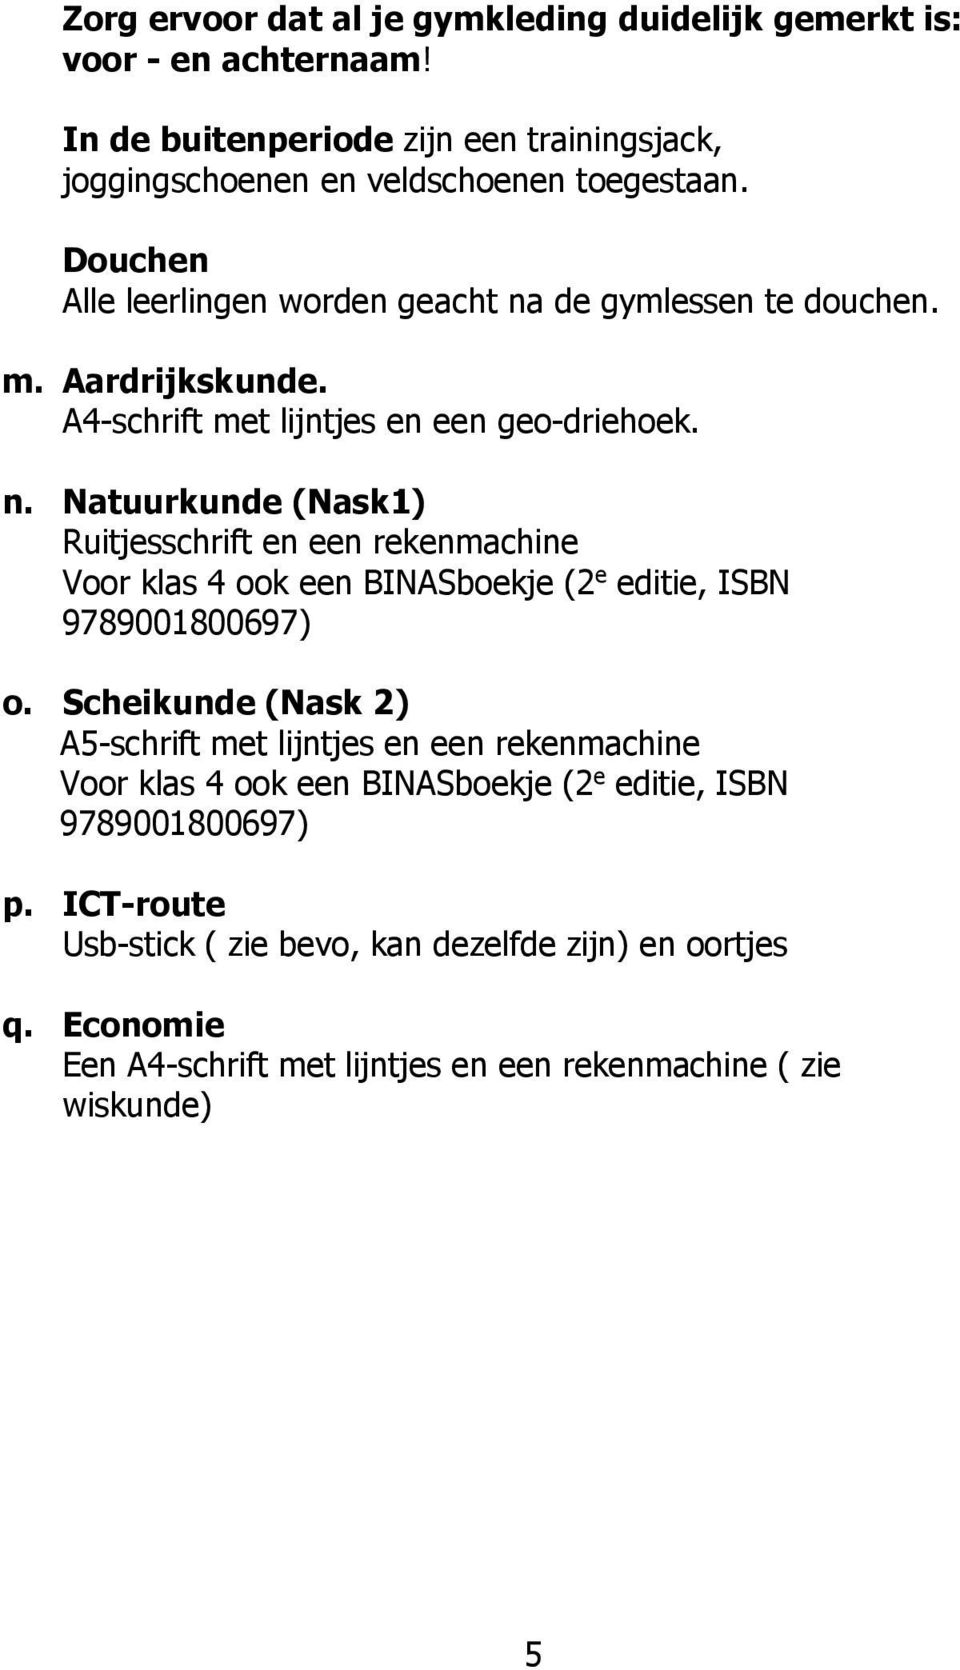 Scheikunde (Nask 2) A5-schrift met lijntjes en een rekenmachine Voor klas 4 ook een BINASboekje (2 e editie, ISBN 9789001800697) p.